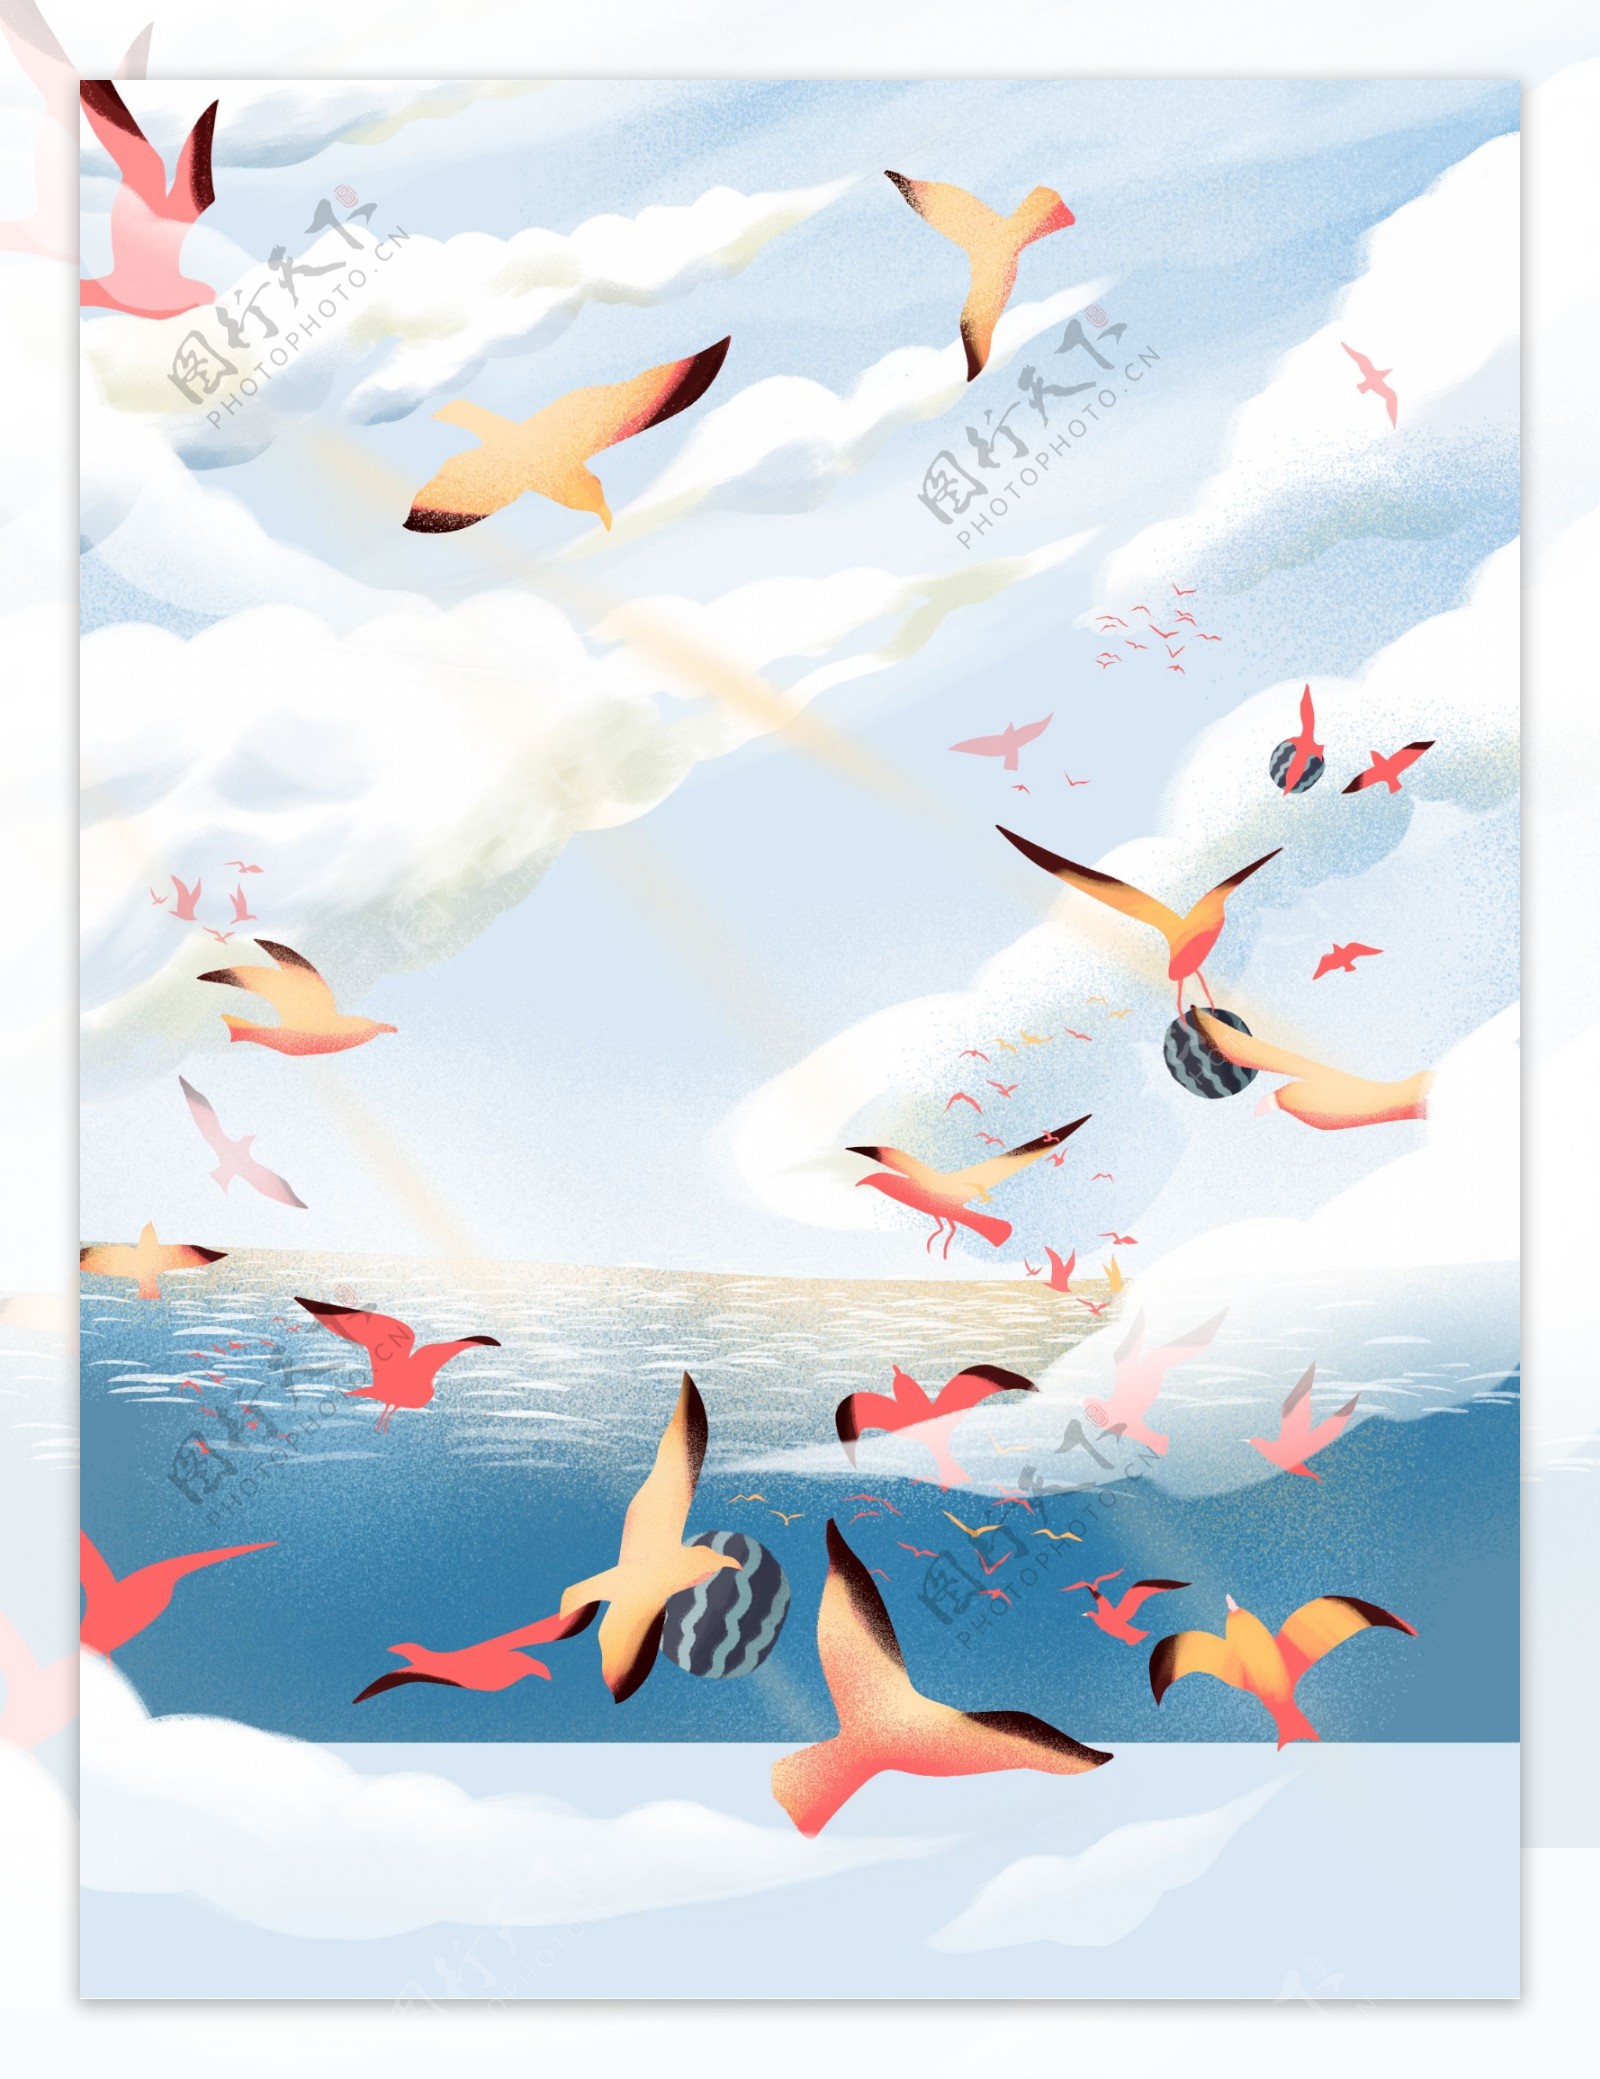 彩绘夏季海鸥大海背景设计